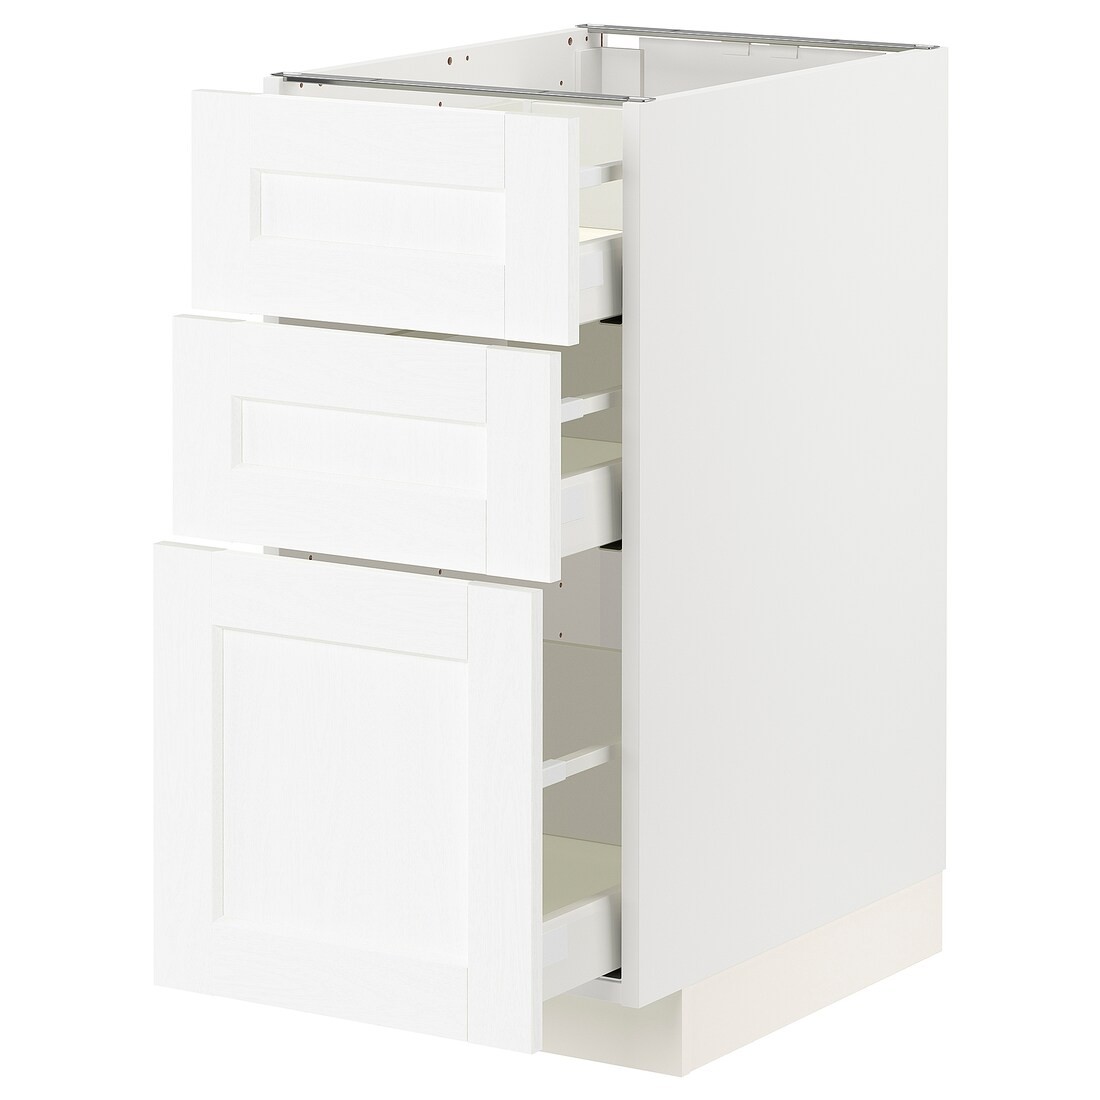 IKEA METOD МЕТОД / MAXIMERA МАКСИМЕРА Напольный шкаф с 3 ящиками, белый Enköping / белый имитация дерева, 40x60 см 69473426 694.734.26